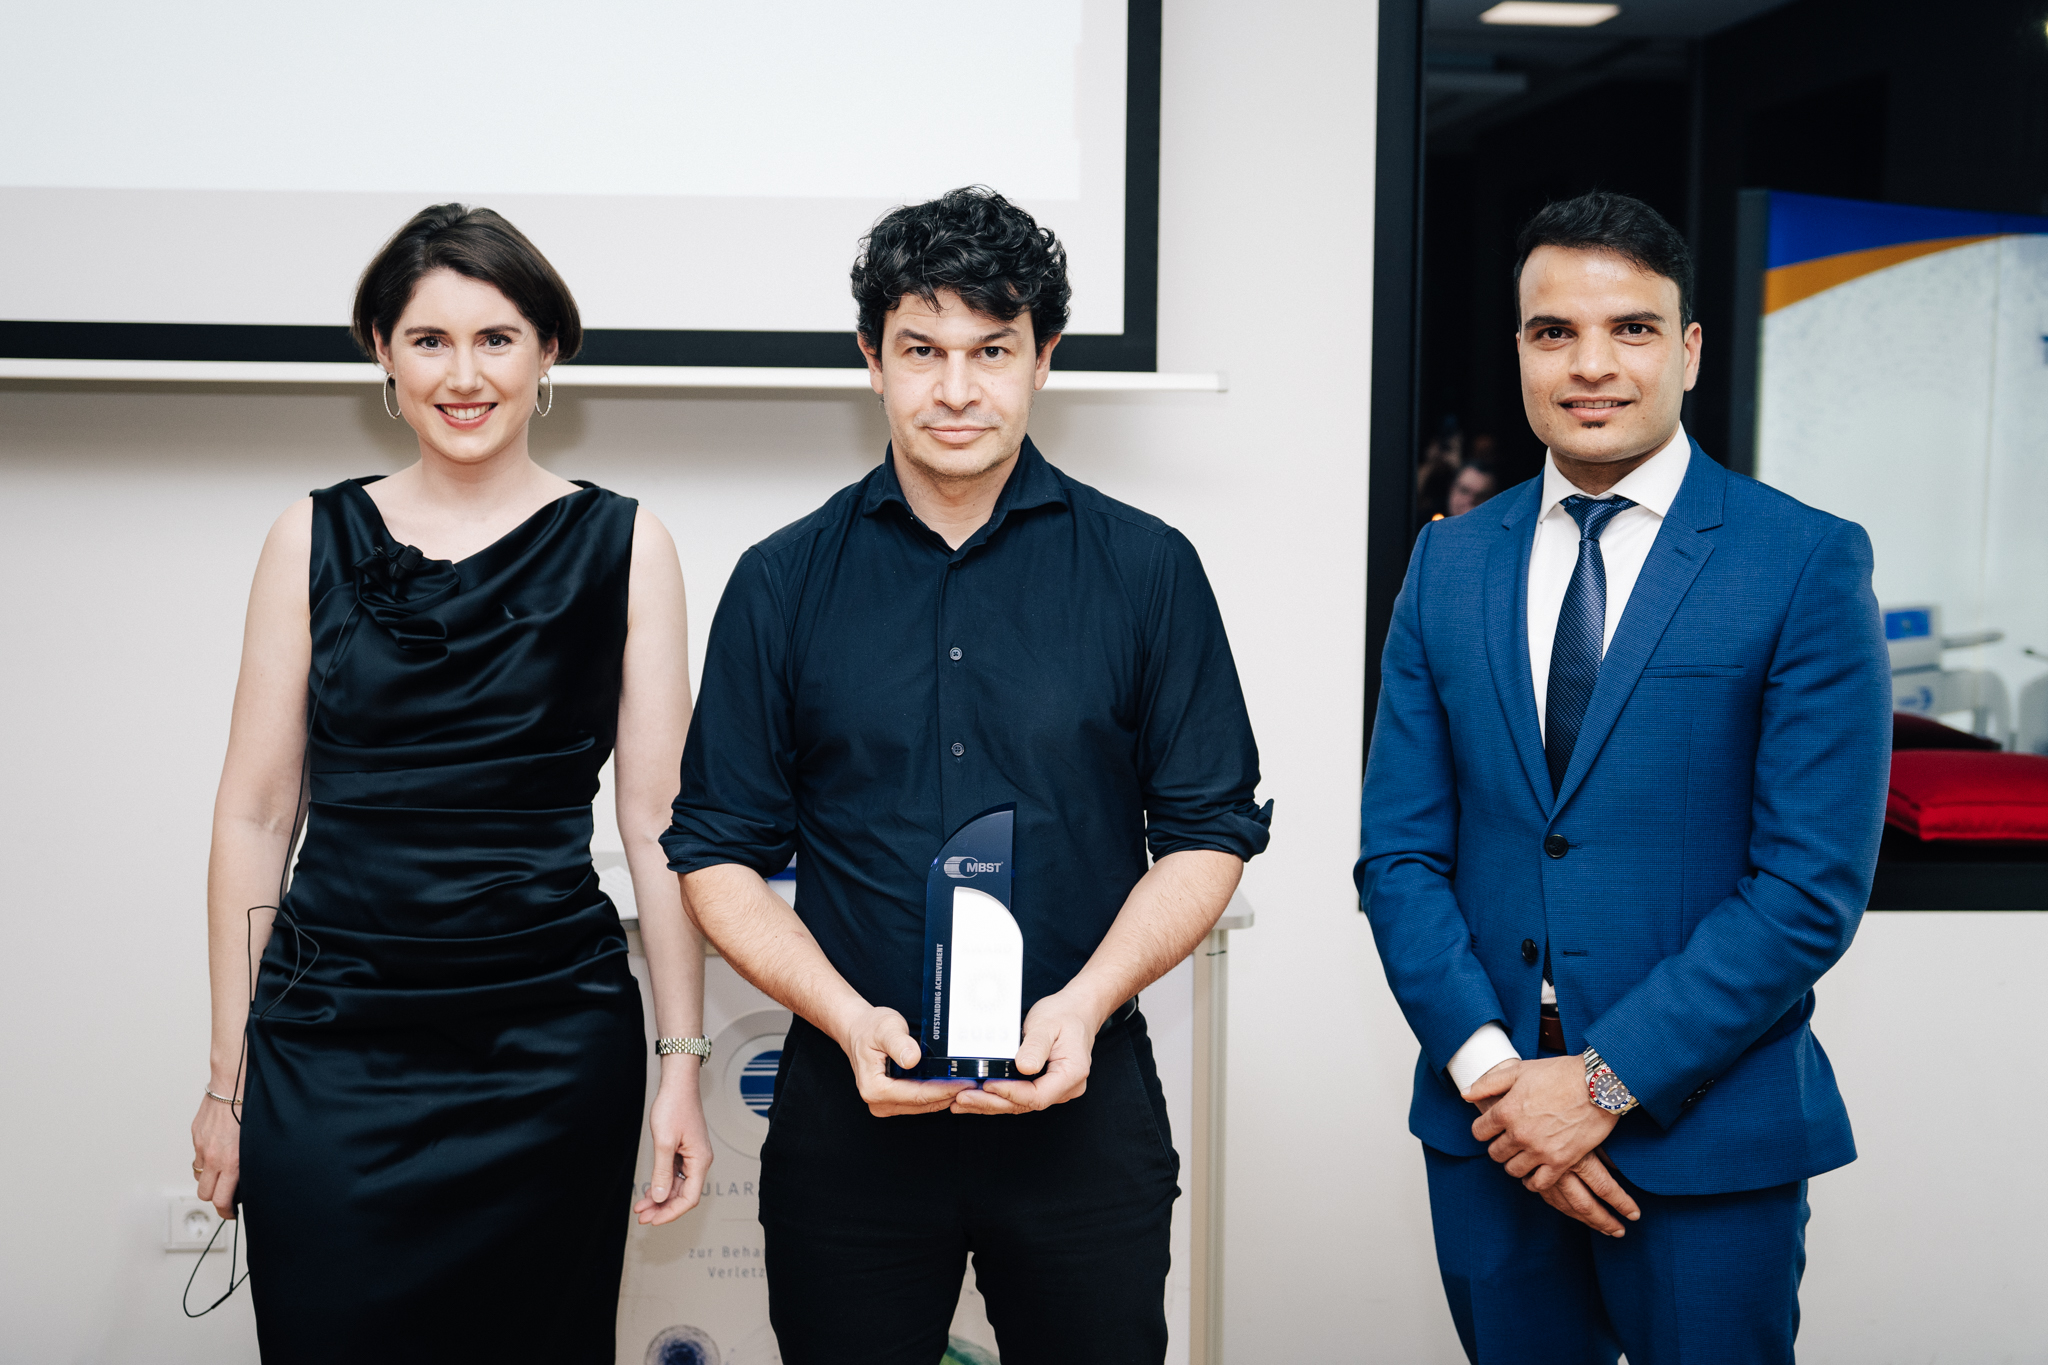 Javier Alfonso erhält einen MBST-Award von Geschäftsführerin Sarah Hartmann und Stellvertretendem Geschäftsführer Jagadish Paudel